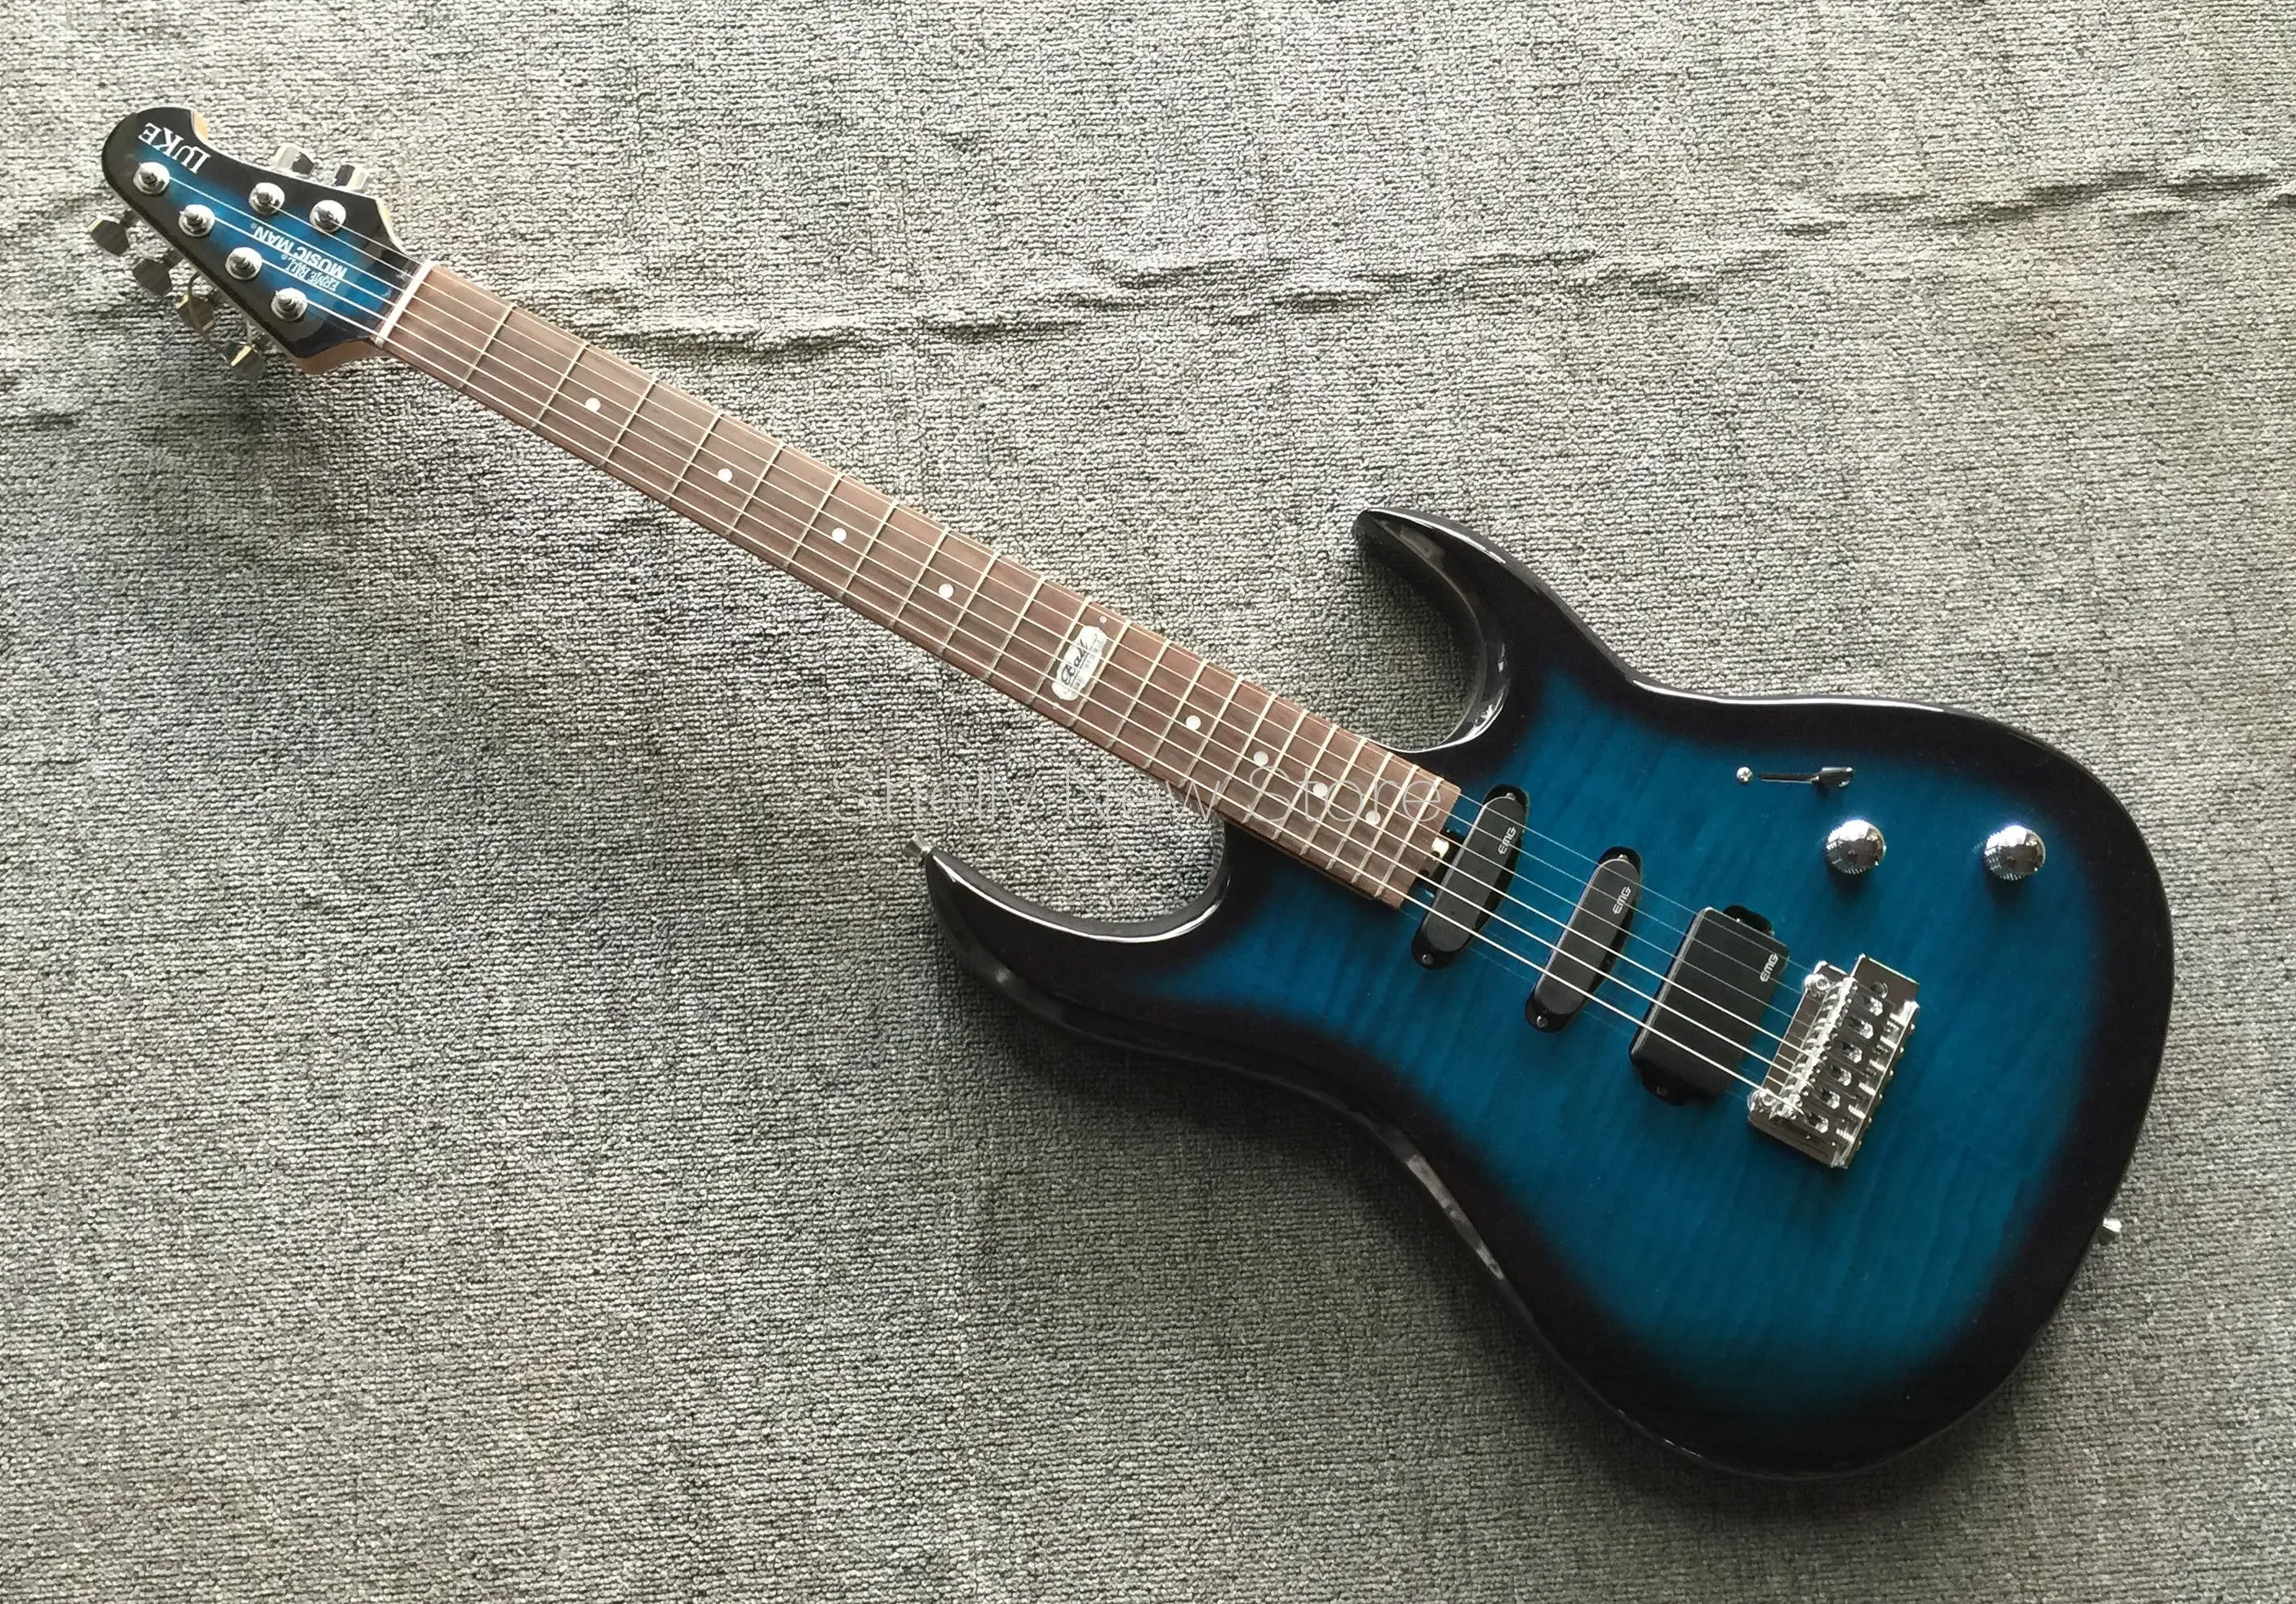 Chitarra Shelly nuovo negozio di fabbrica personalizzato blu musicista Luke 3 pickup sintonizzatore con bloccaggio batteria 9v negozio di strumenti musicali per chitarra elettrica